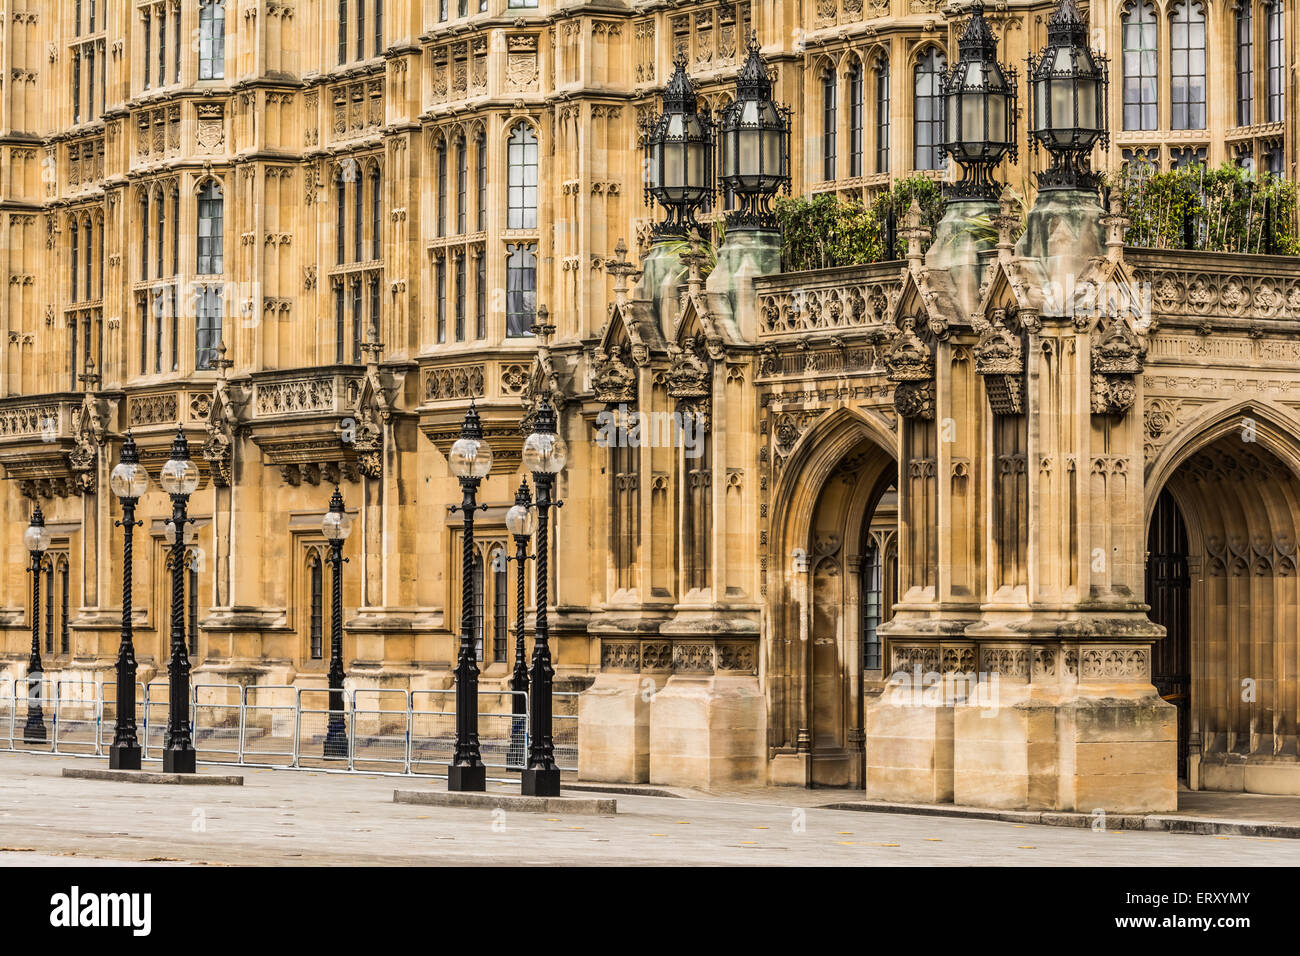 Dettagli architettonici del palazzo di Westminster, Londra, UK. Foto Stock